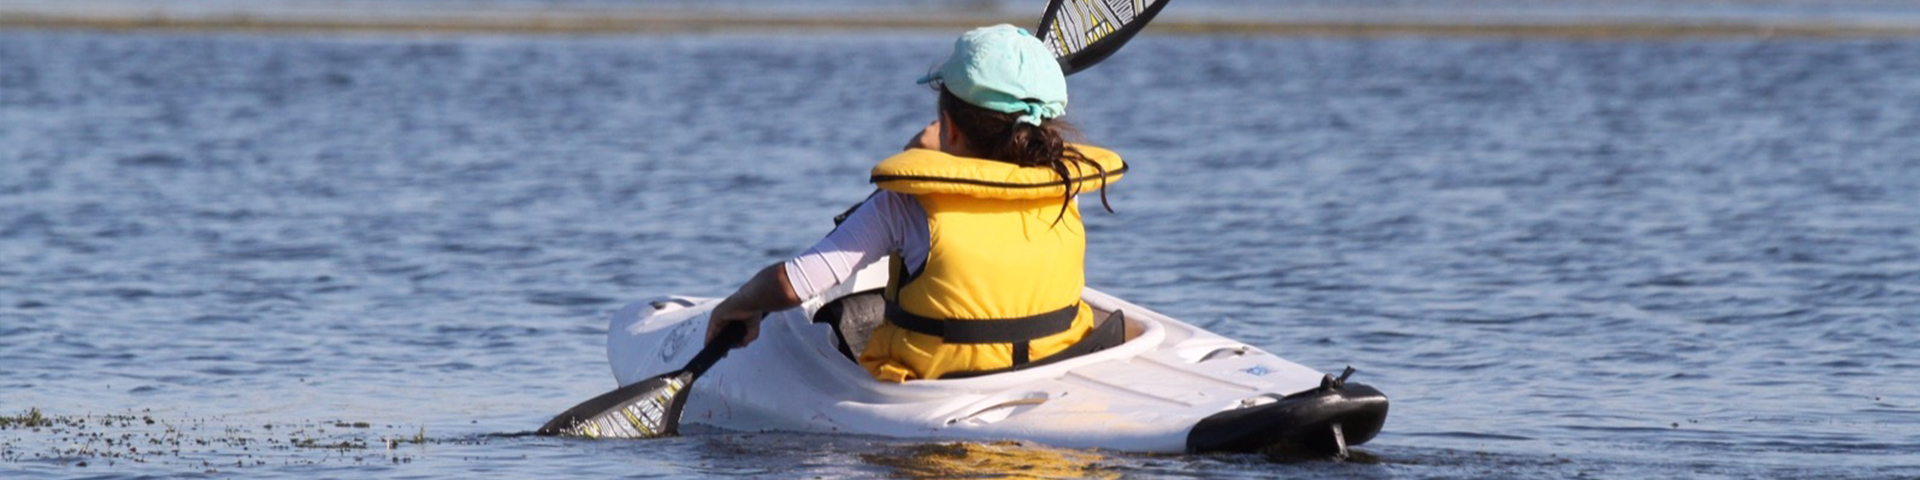 Le SQUALY est un kayak école, permettant la pratique de l’activité kayak dès le plus jeune âge. Adapté aux jeunes pagayeurs, il facilite l’acquisition de la technique en kayak pour une navigation fun et sécurisante en eau calme et aussi en rivières ou bassins artificiels.